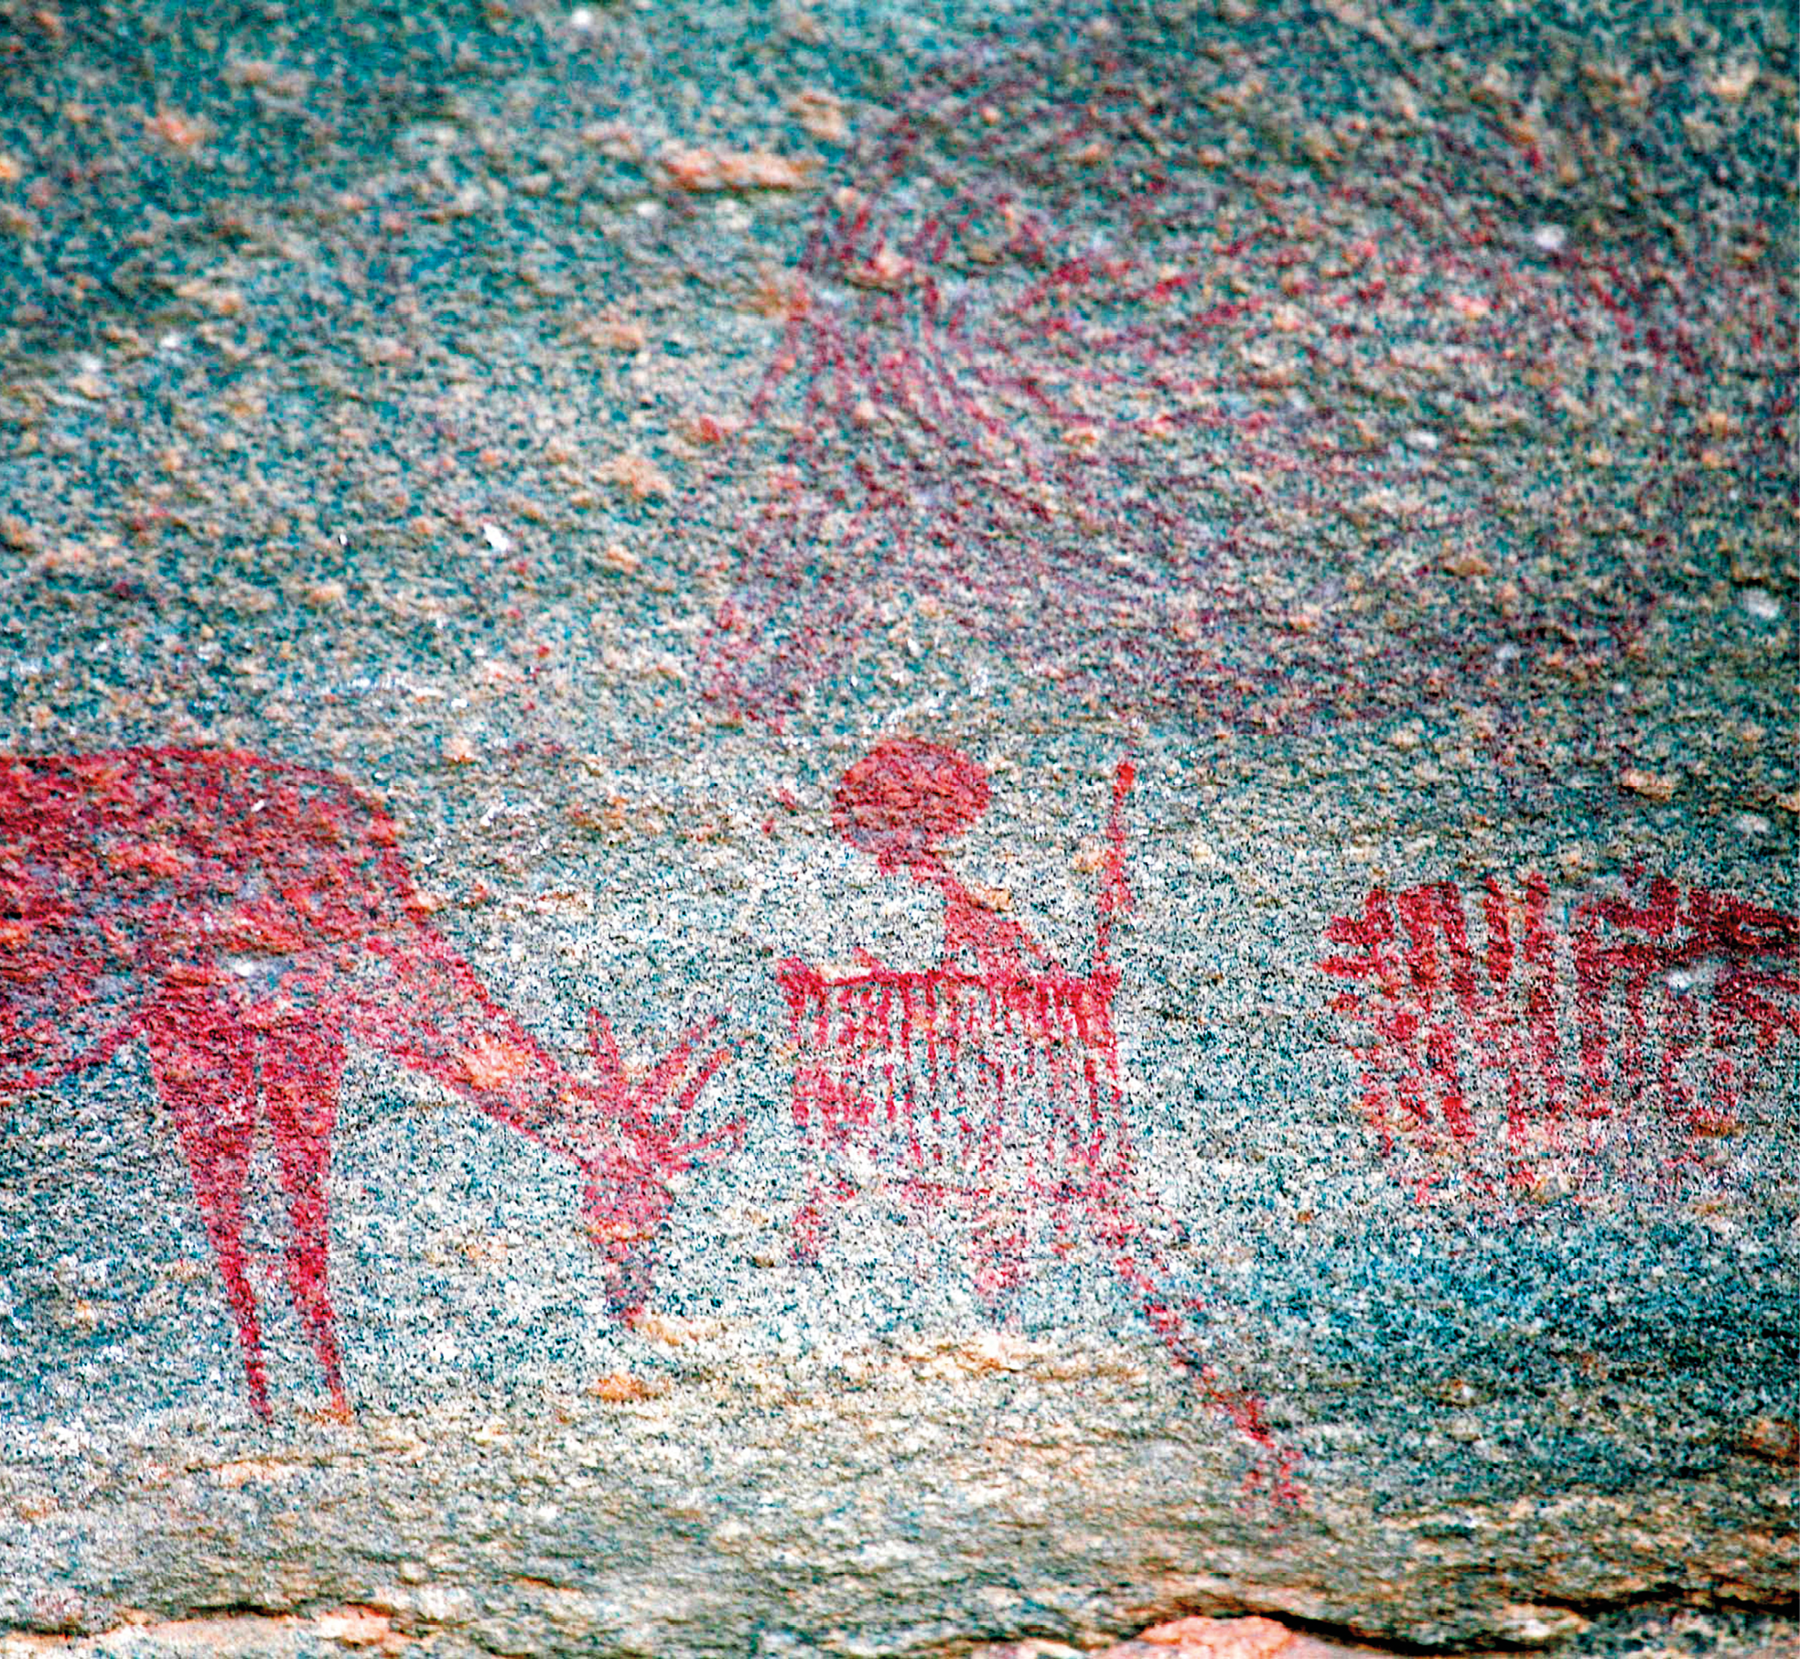 Fotografia. Destaque para uma parede de caverna em tons de azul; sobre ela há uma pintura rupestre em tons de vermelho retratando formas humanas e animais.